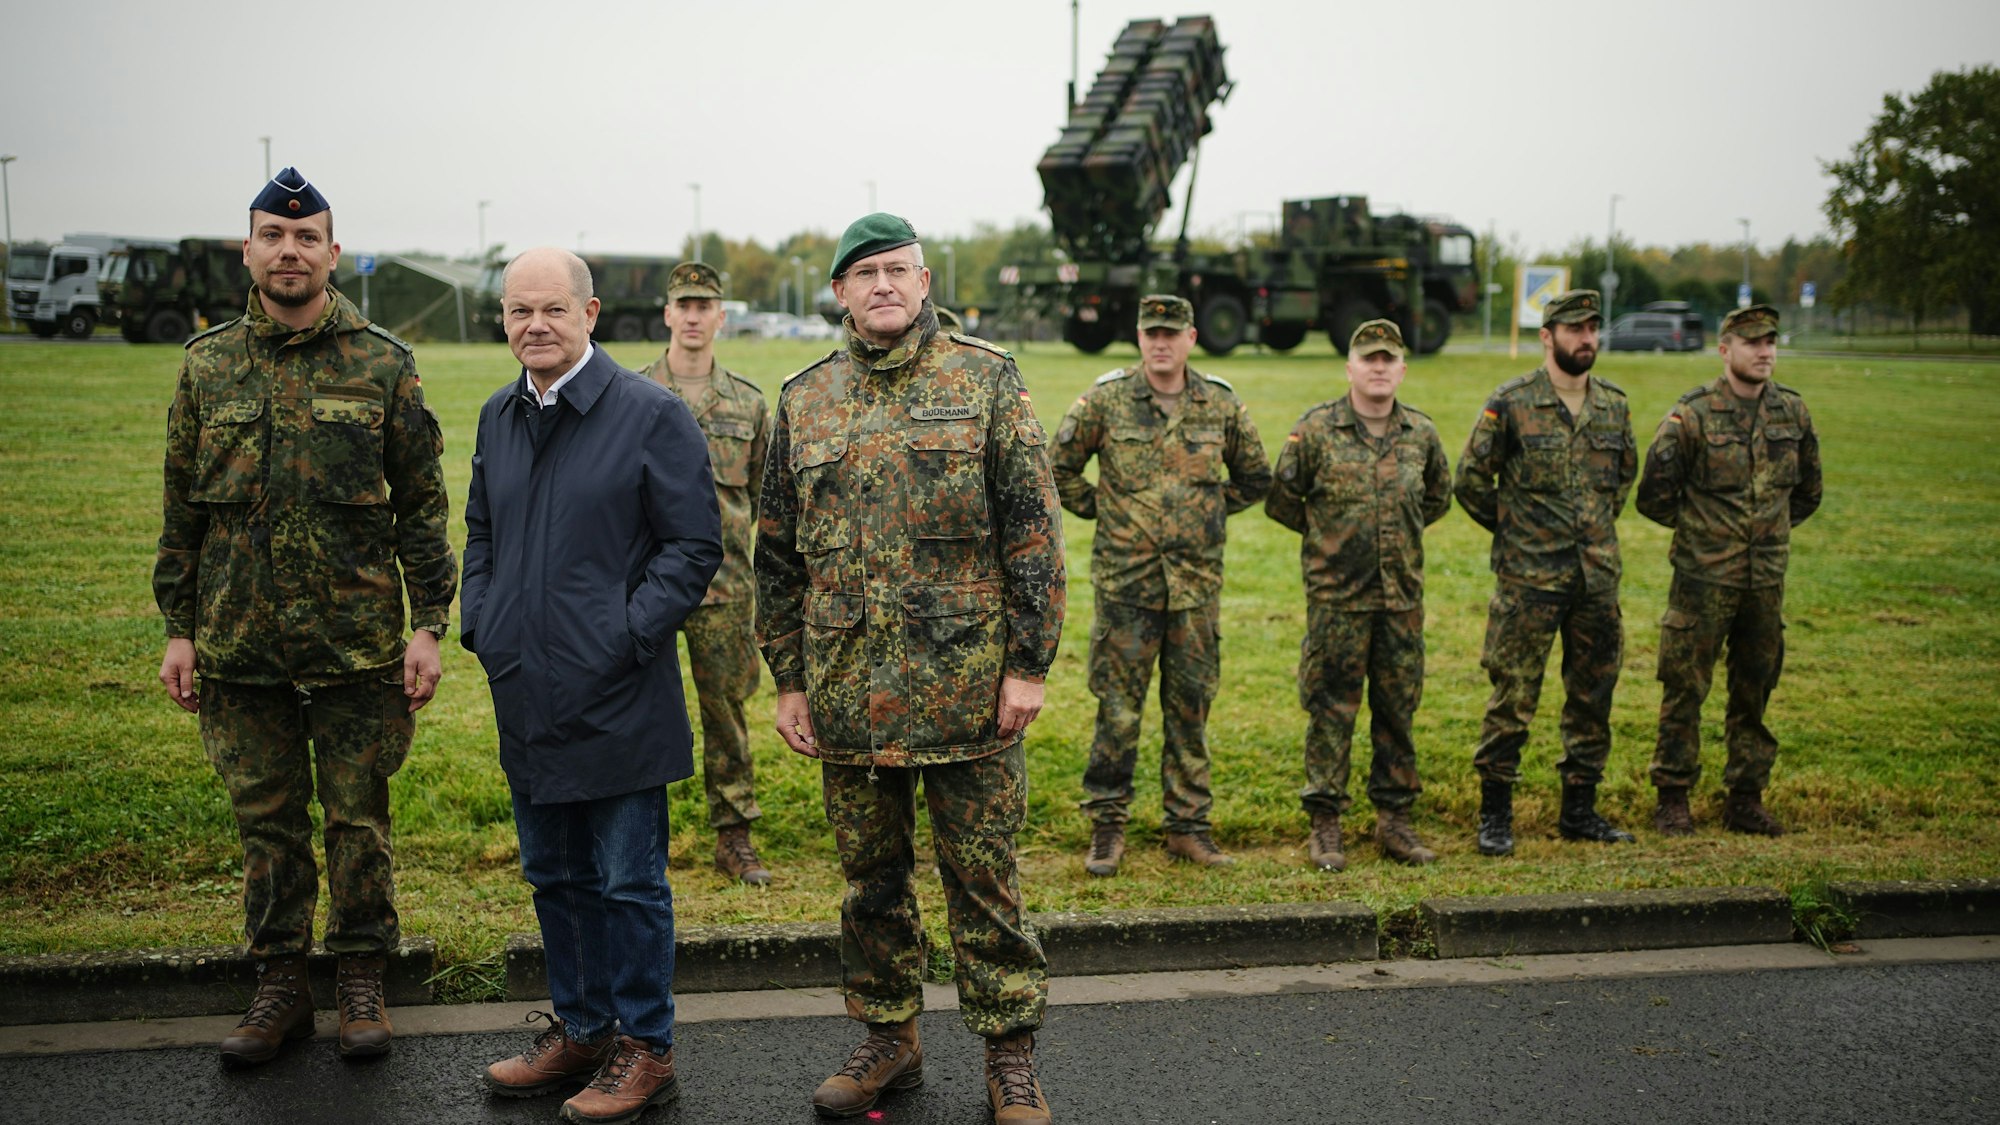 Bundeskanzler Olaf Scholz (SPD) steht zwischen Soldaten auf dem Militärflughafen Köln-Wahn vor einem Patriot-Flugabwehrsystem.